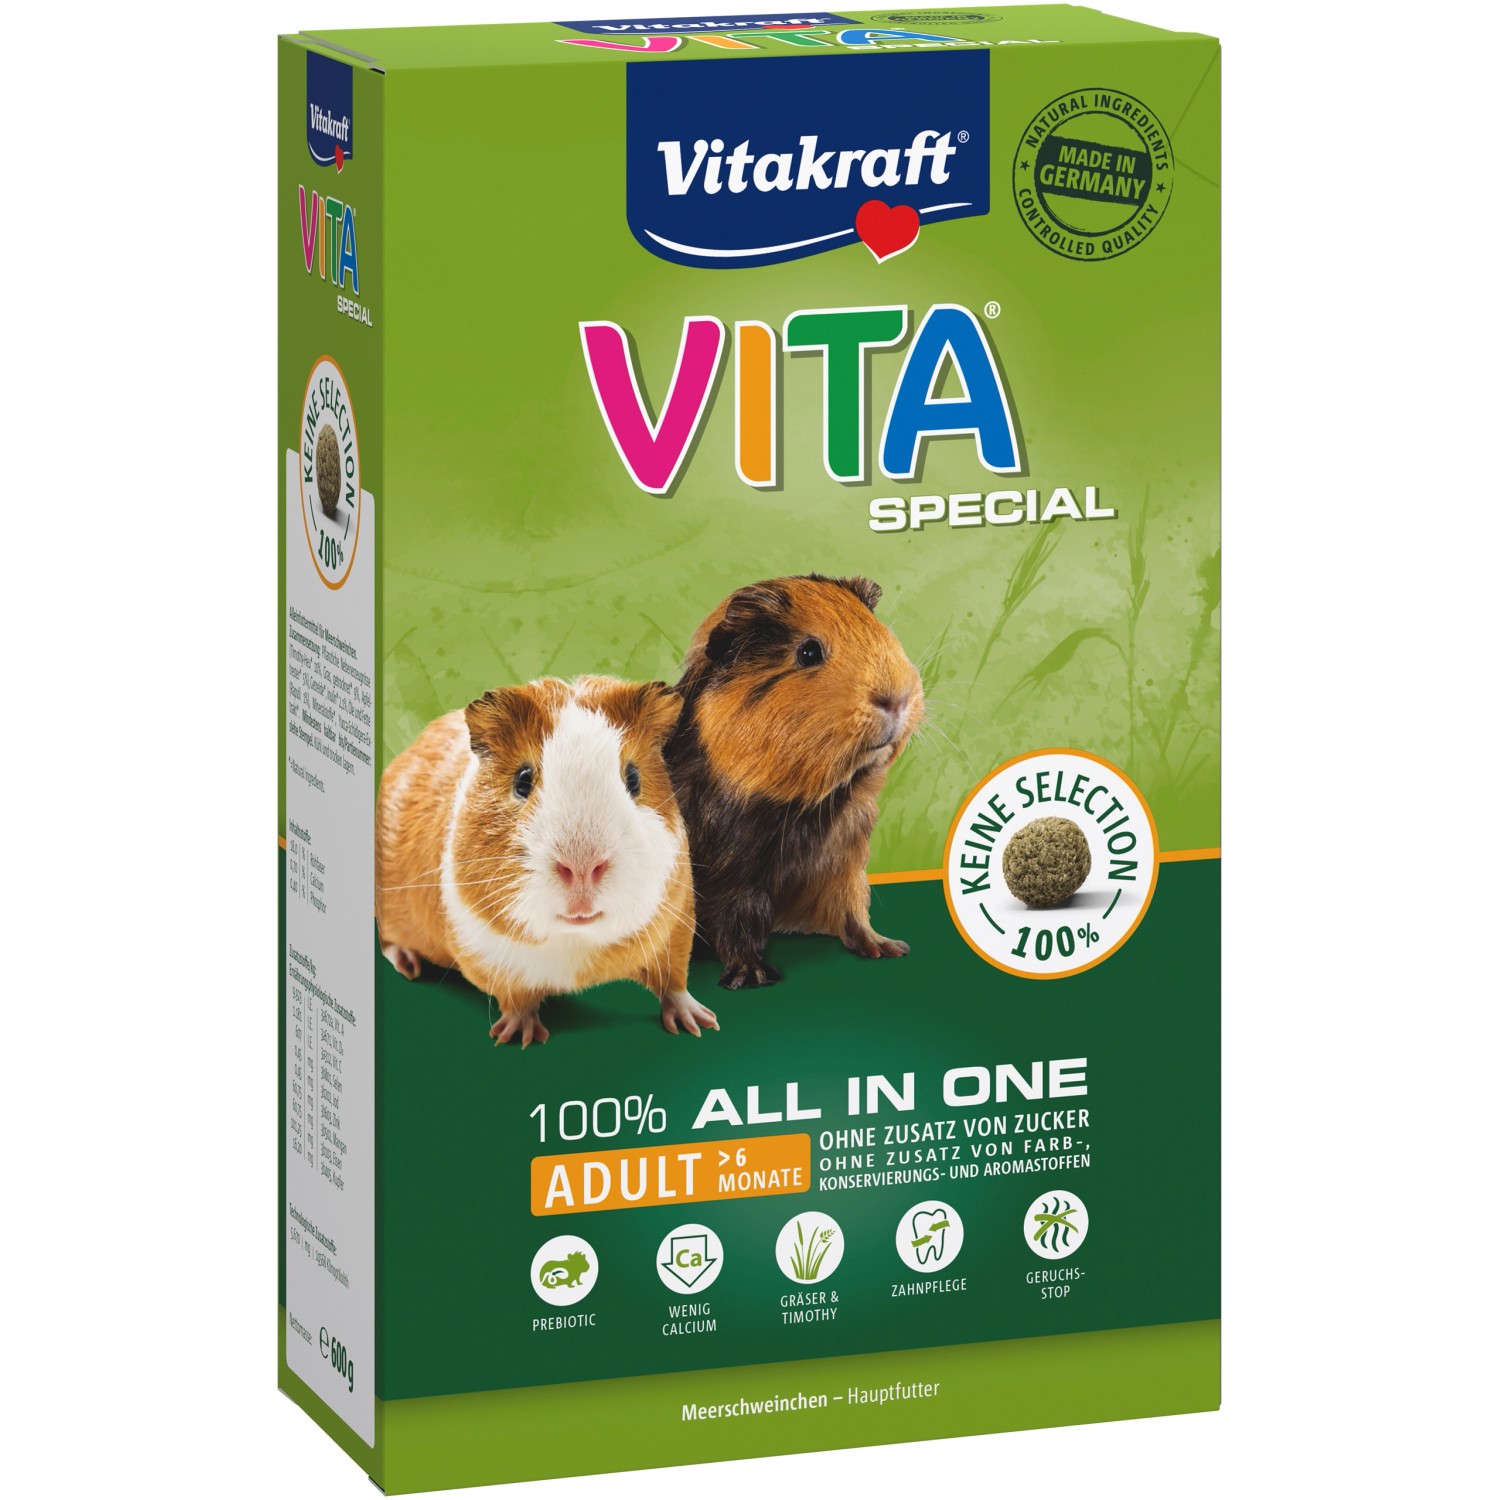 Vitakraft Vita® Special Adult für Meerschweinchen 600 g